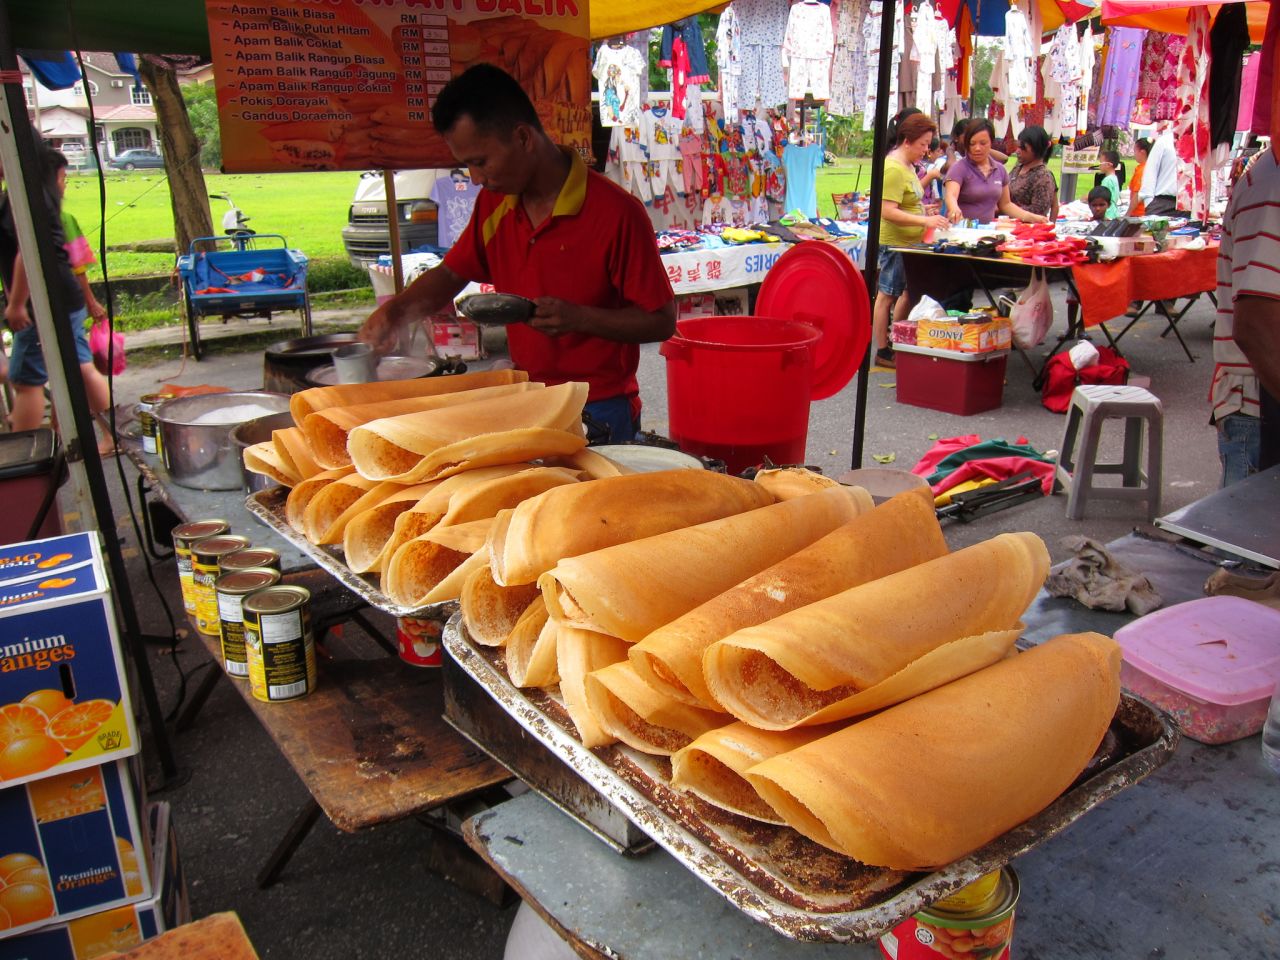 2. Apam balik Được dịch từ tiếng Anh-Apam balik còn được gọi là Martabak Manis, terang bulan, bánh kếp đậu phộng hoặc mànjiānguǒ, là một món tráng miệng ngọt có nguồn gốc từ ẩm thực Phúc Kiến, hiện bao gồm nhiều loại tại các quầy hàng hoặc nhà hàng chuyên biệt ven đường trên khắp Brunei, Indonesia, Malaysia và Singapore